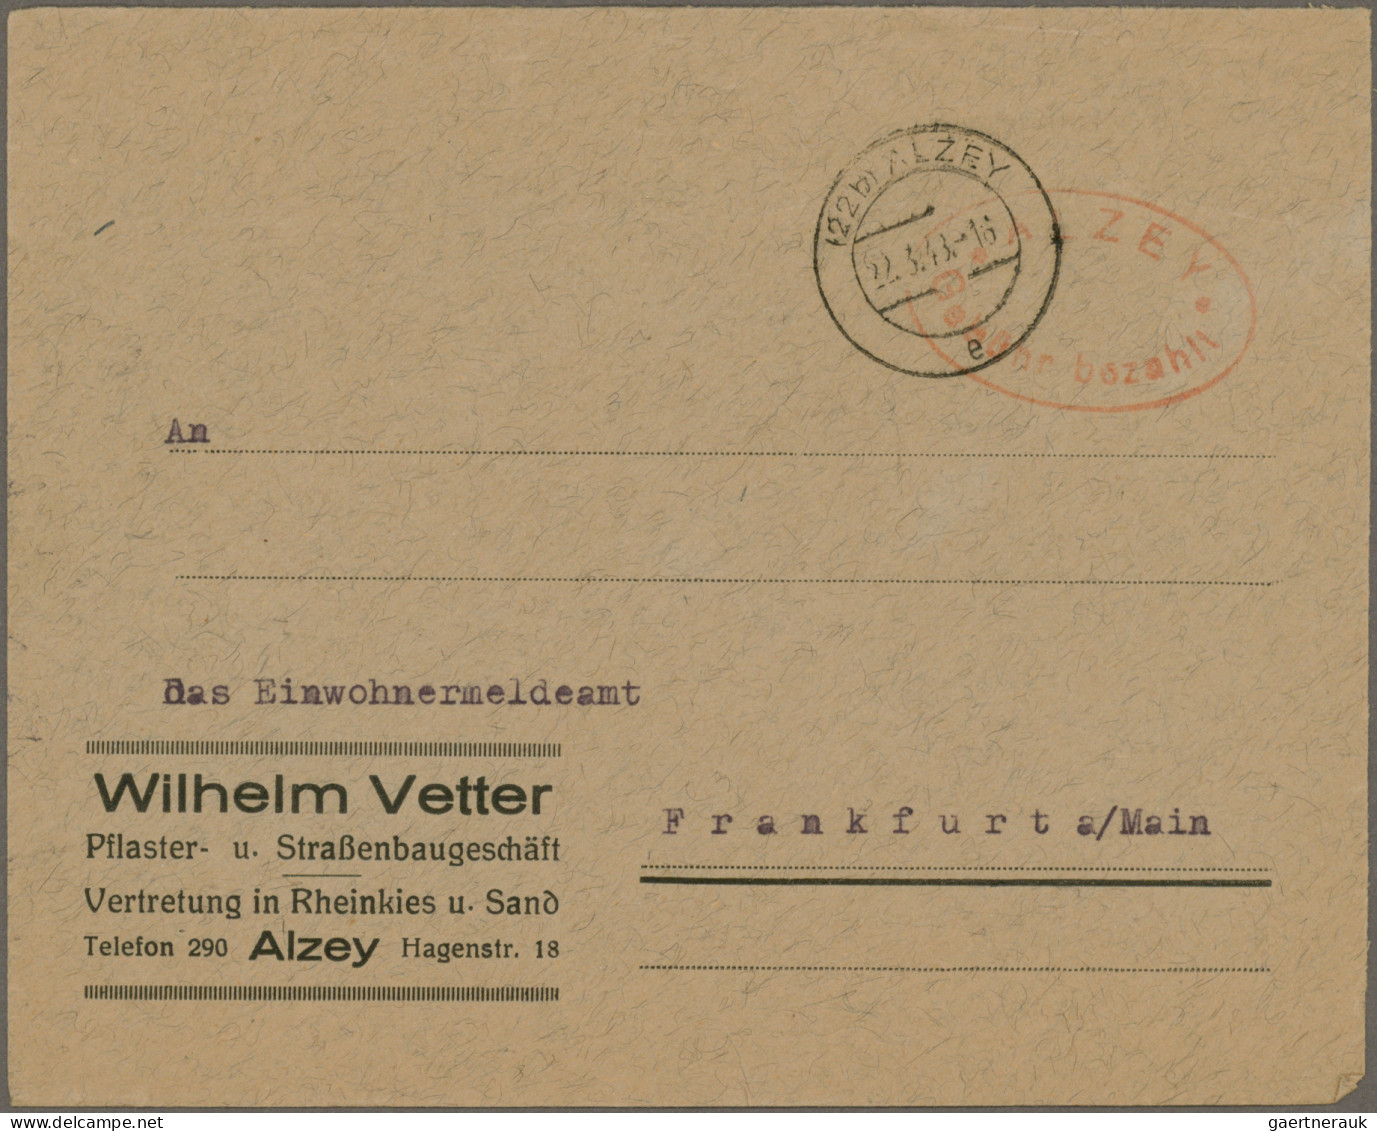 Alliierte Besetzung - Gebühr Bezahlt: 1945/1948, Sammlungsbestand von ca. 290 Ge